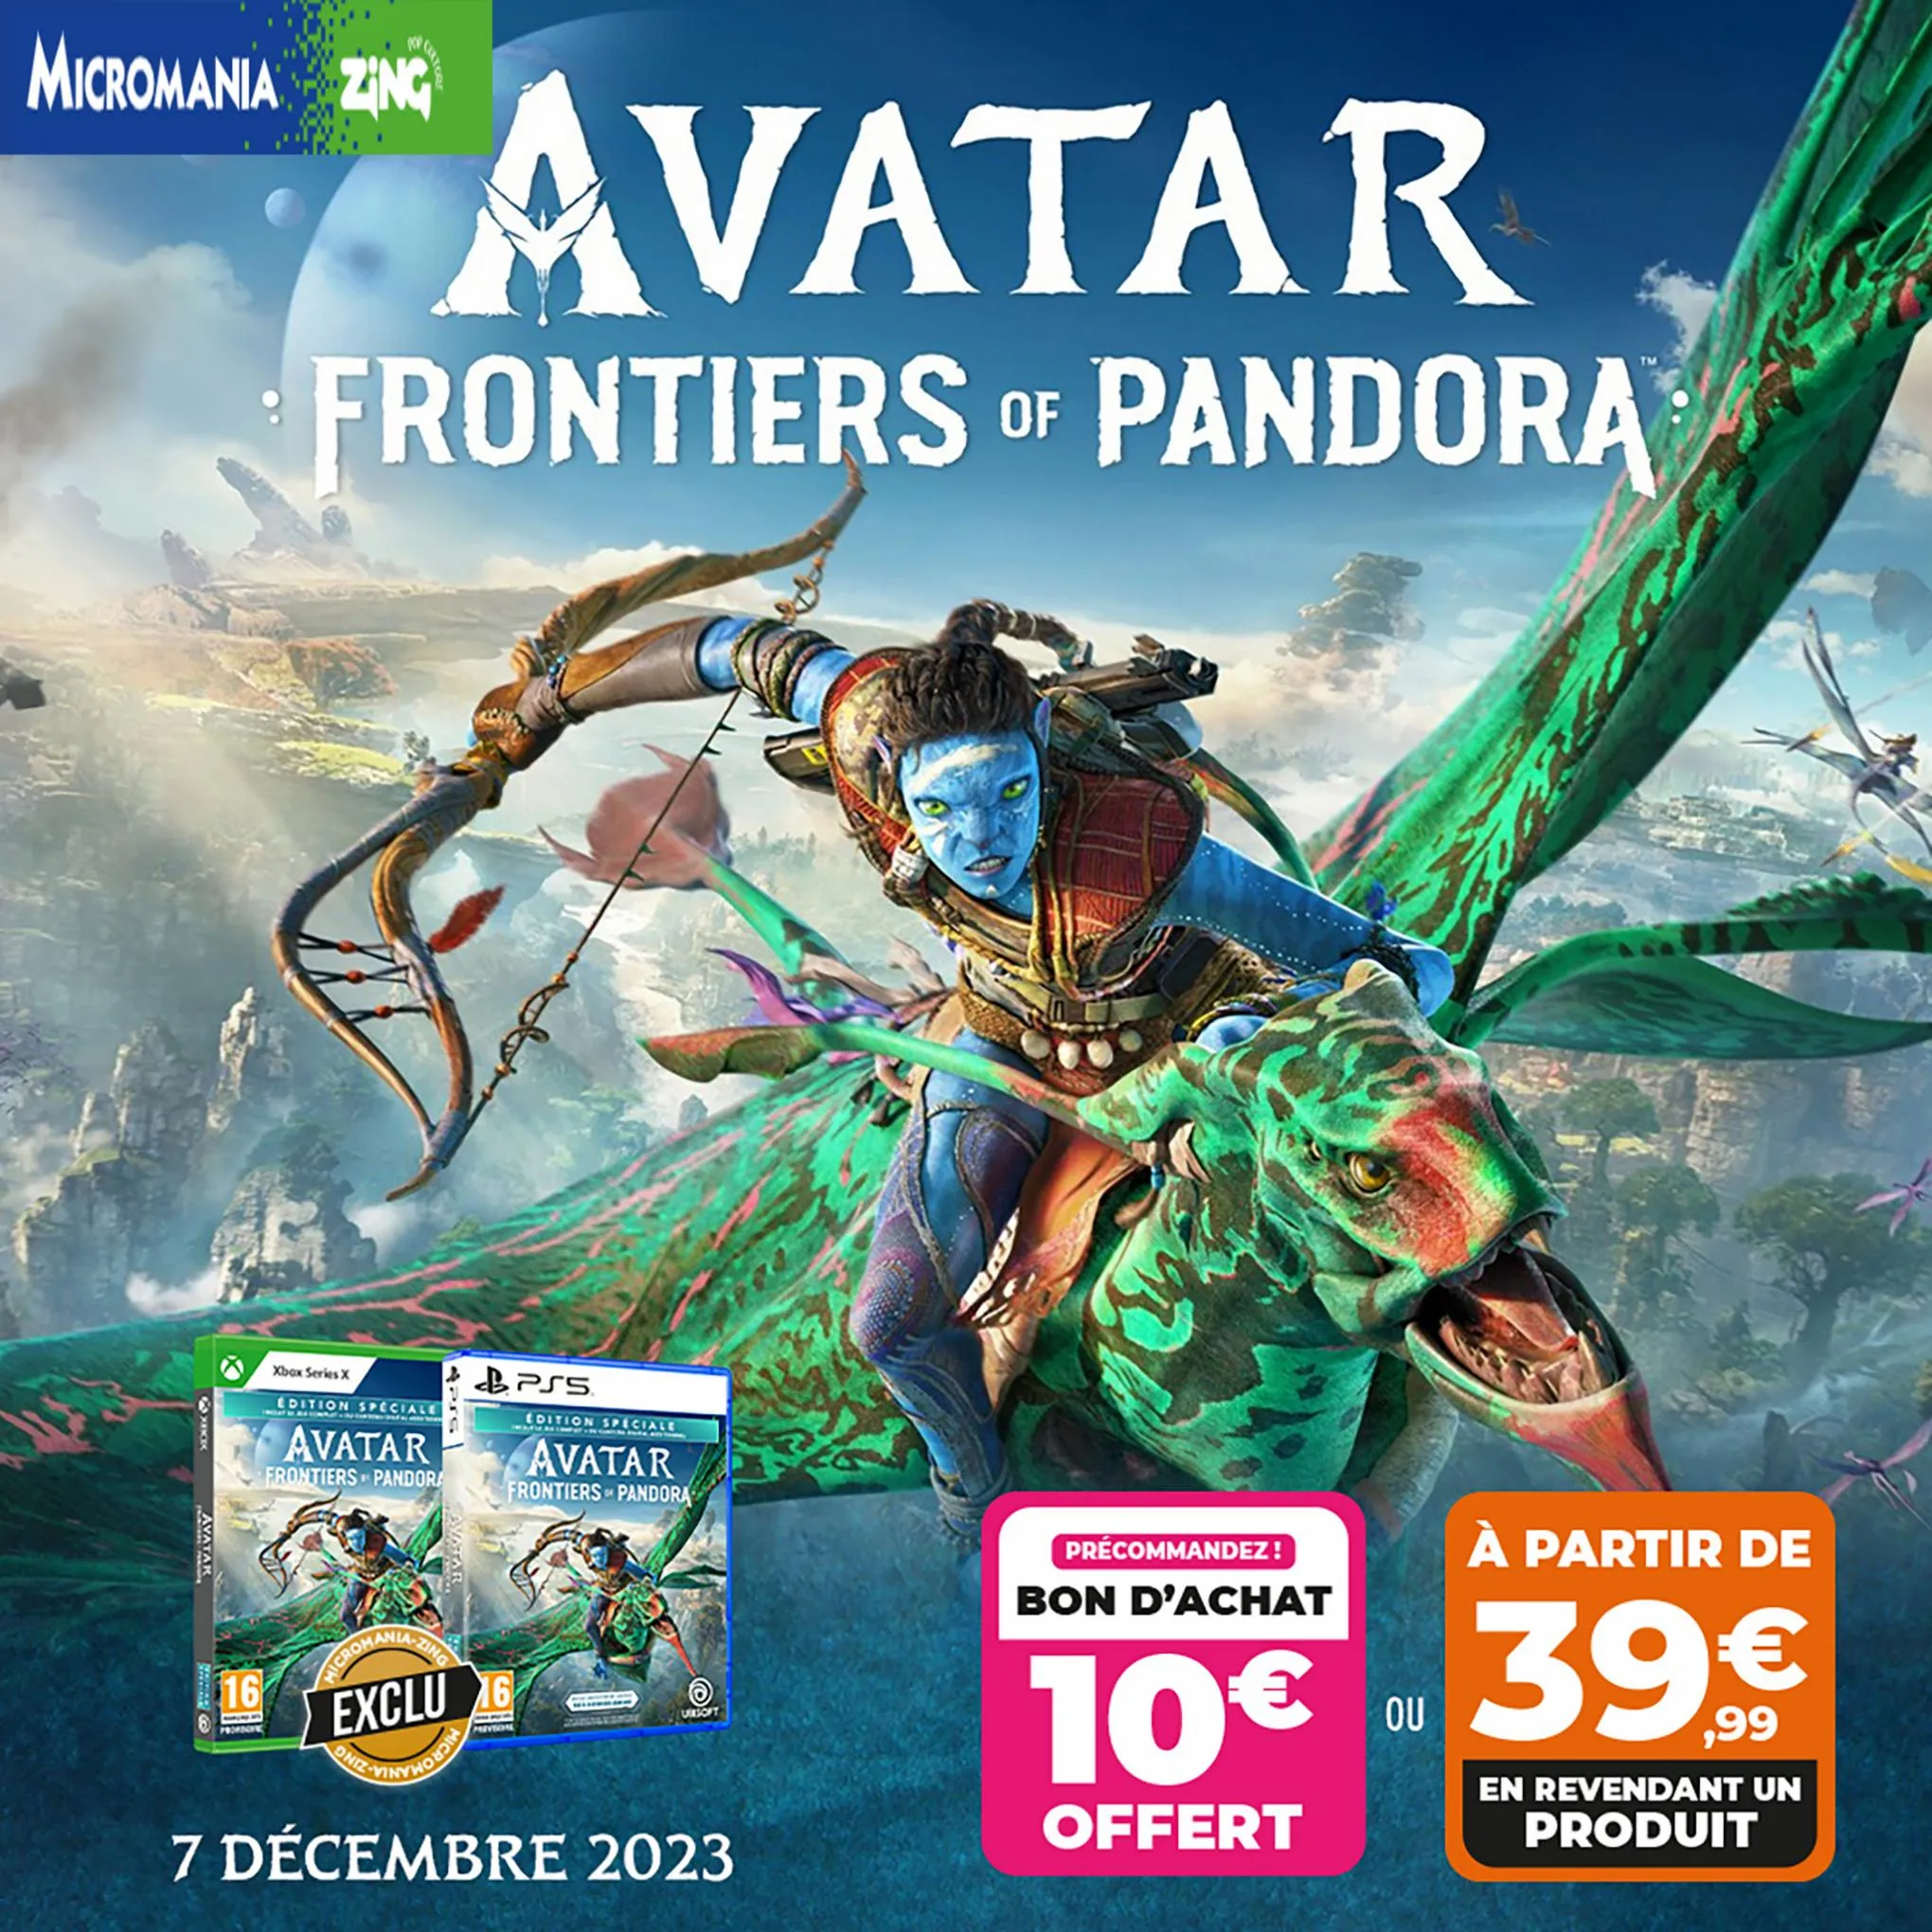 Catalogue Jouez à Avatar pour 39,99€ en revendant un produit éligible de la liste, page 00001